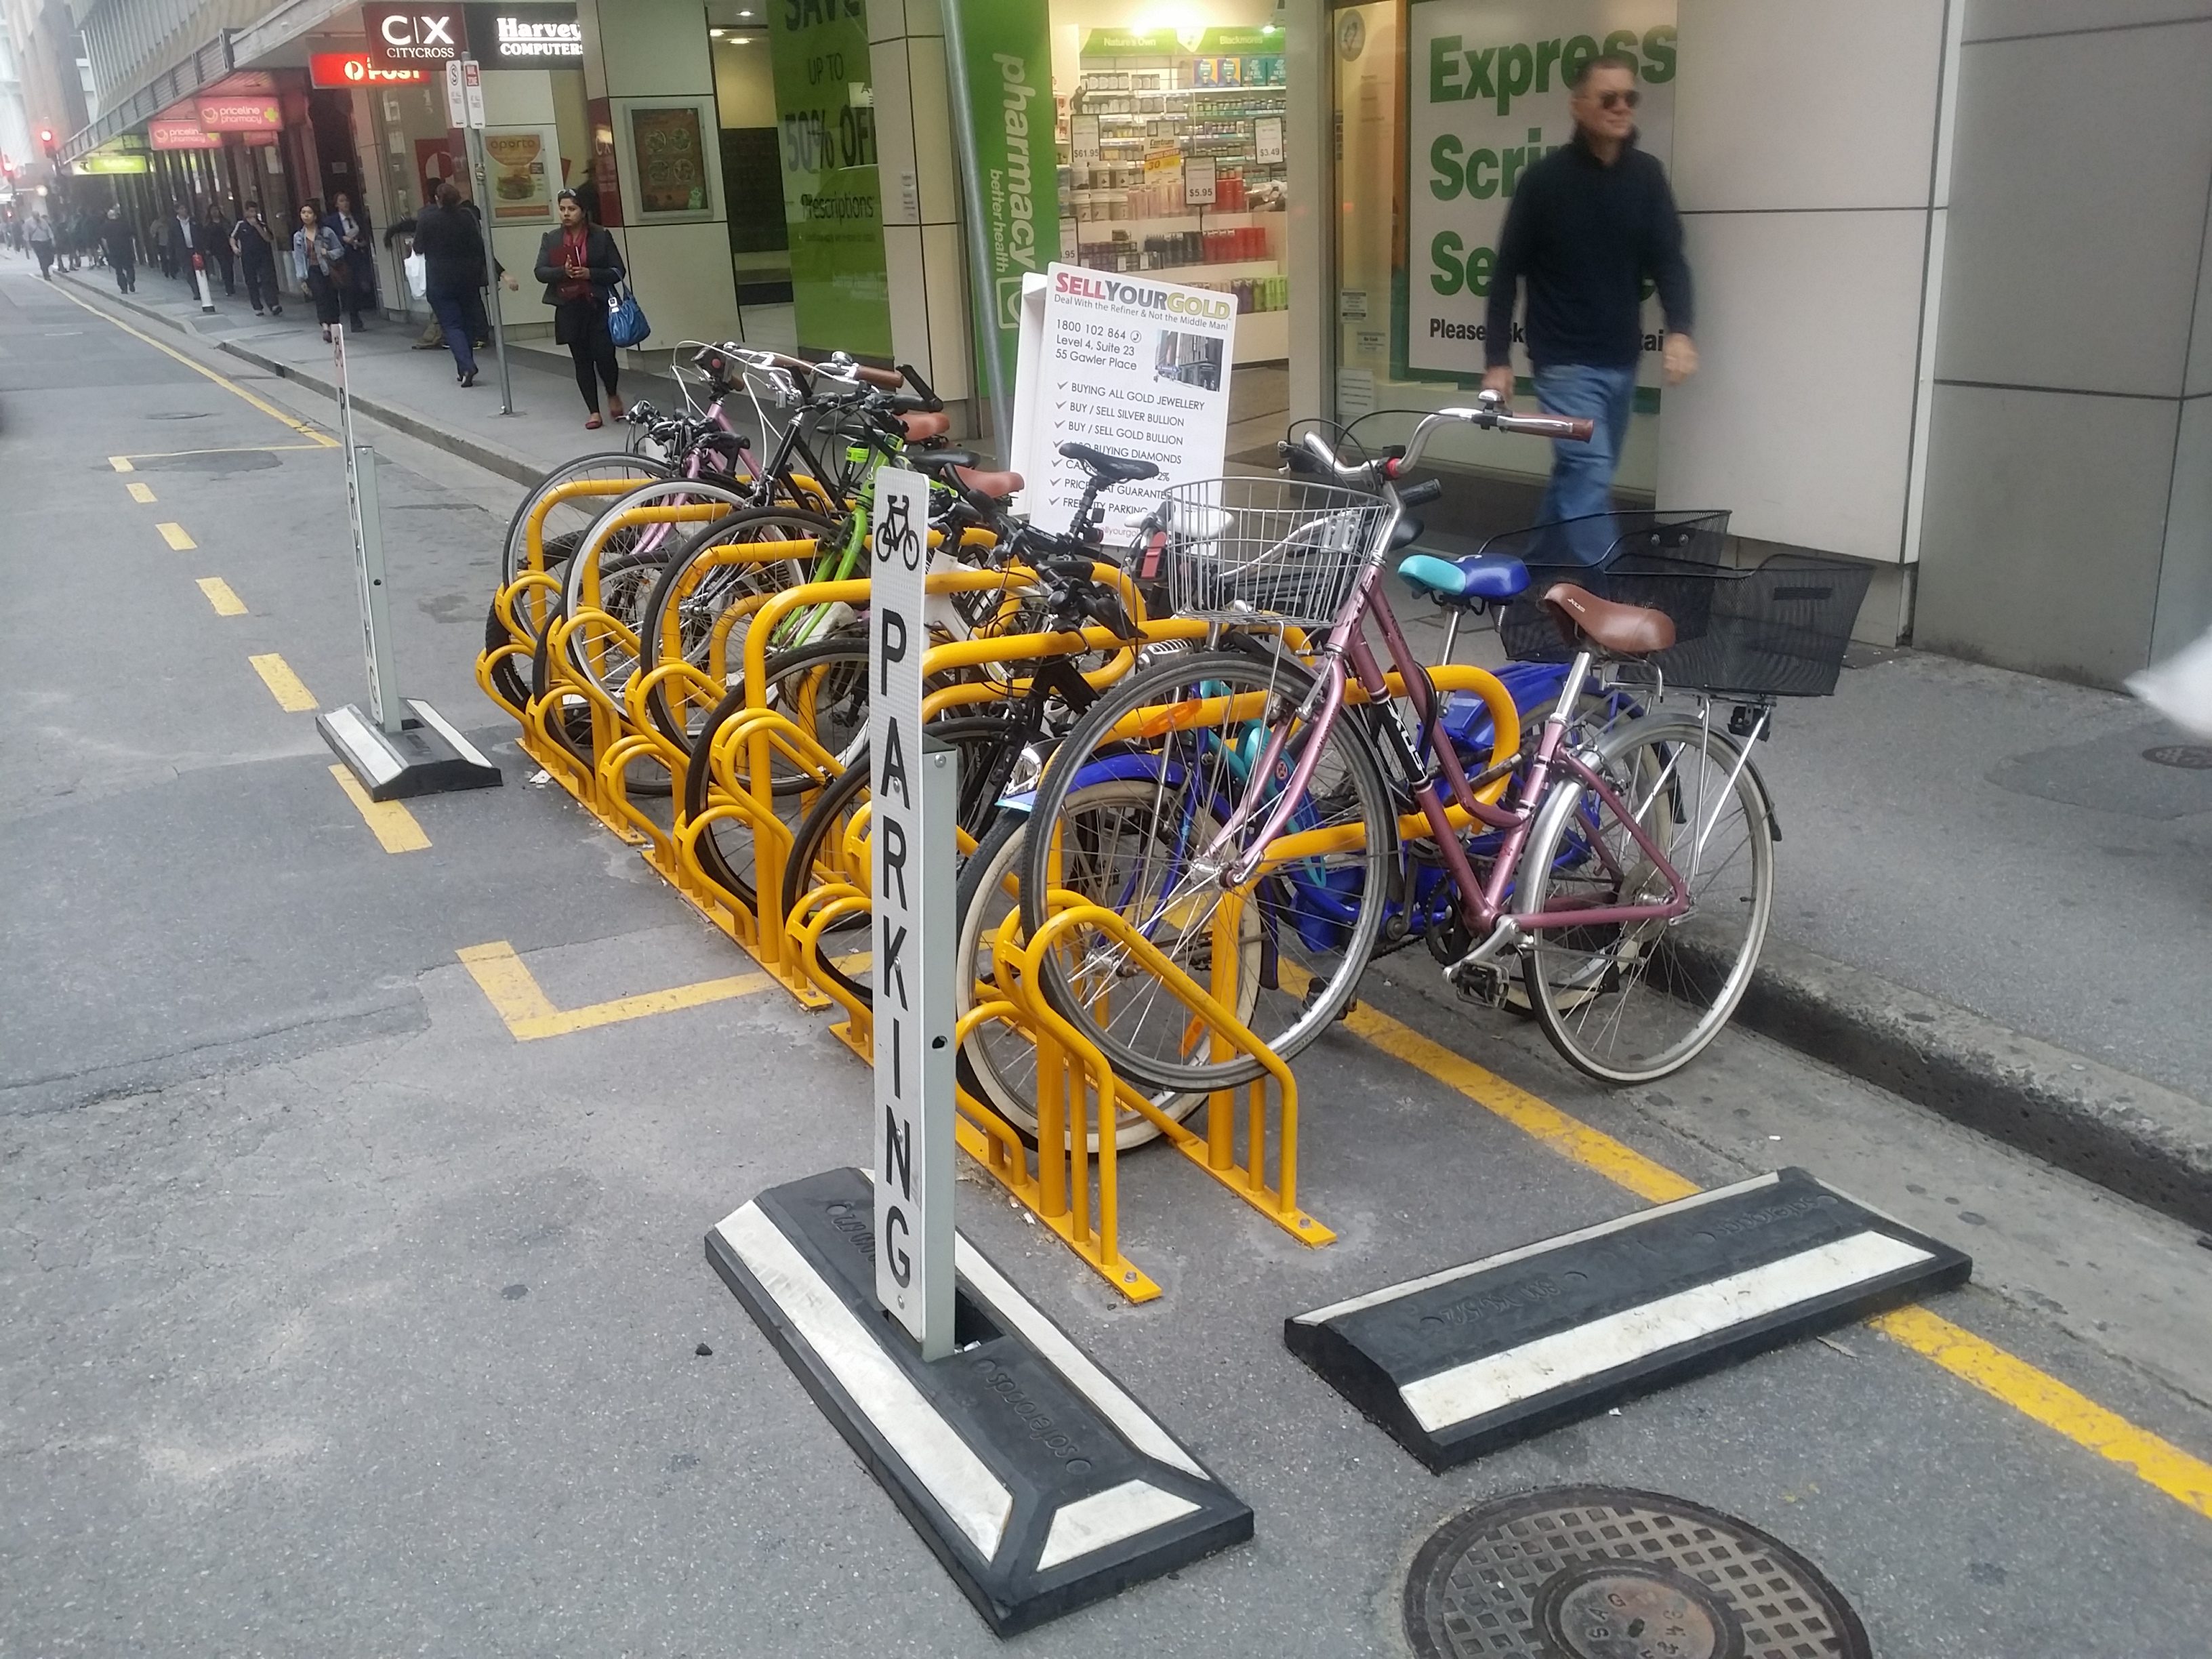 Velo city -Adelaide bike rack